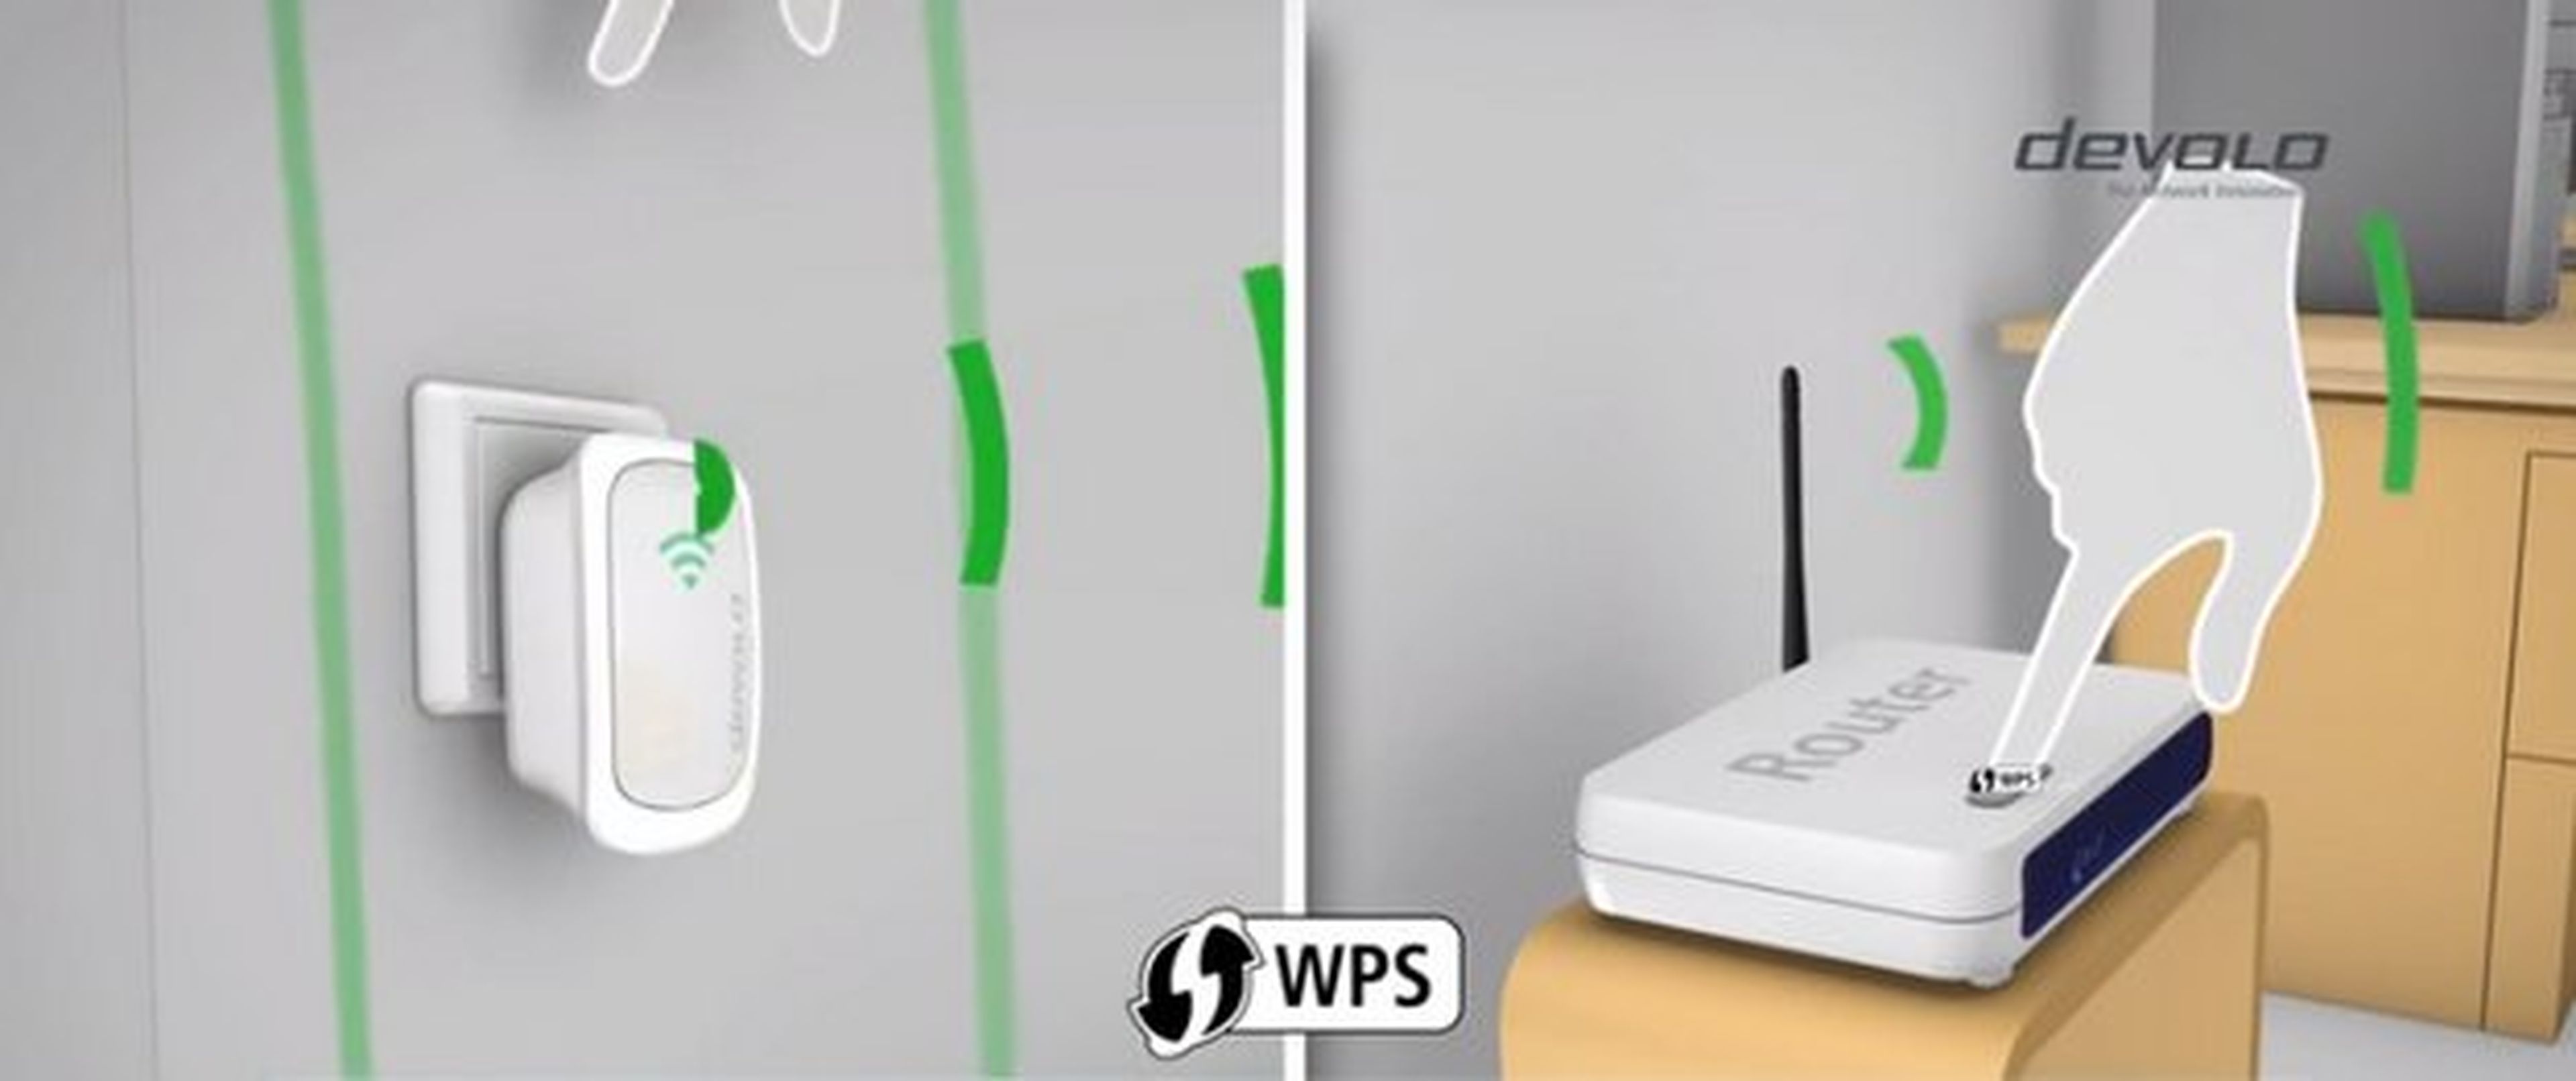 Repetidor WiFi, qué es y cómo funciona